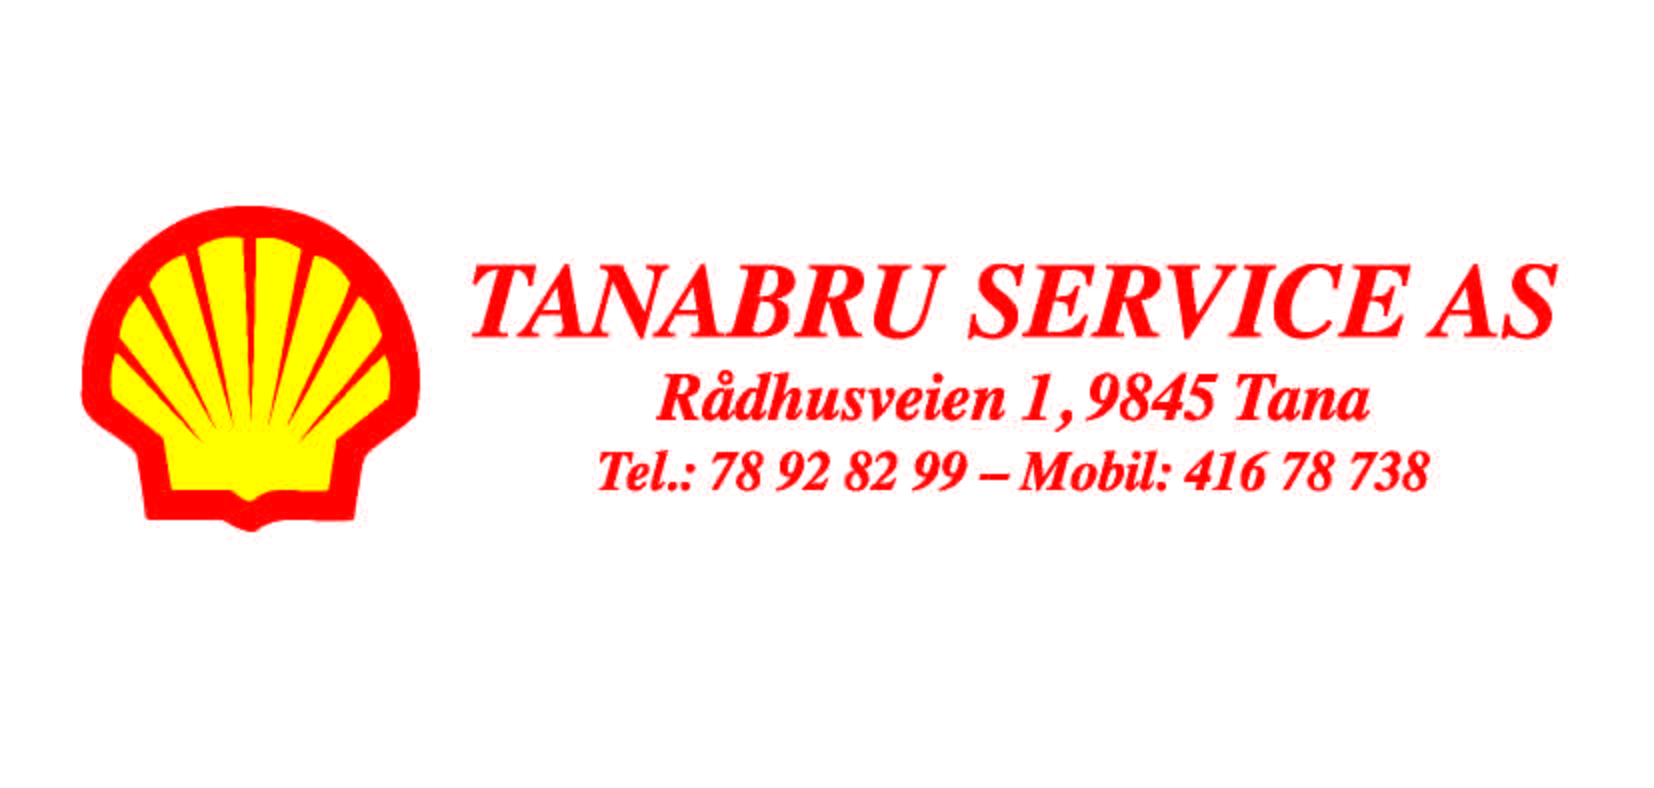 TanabruService logo ny